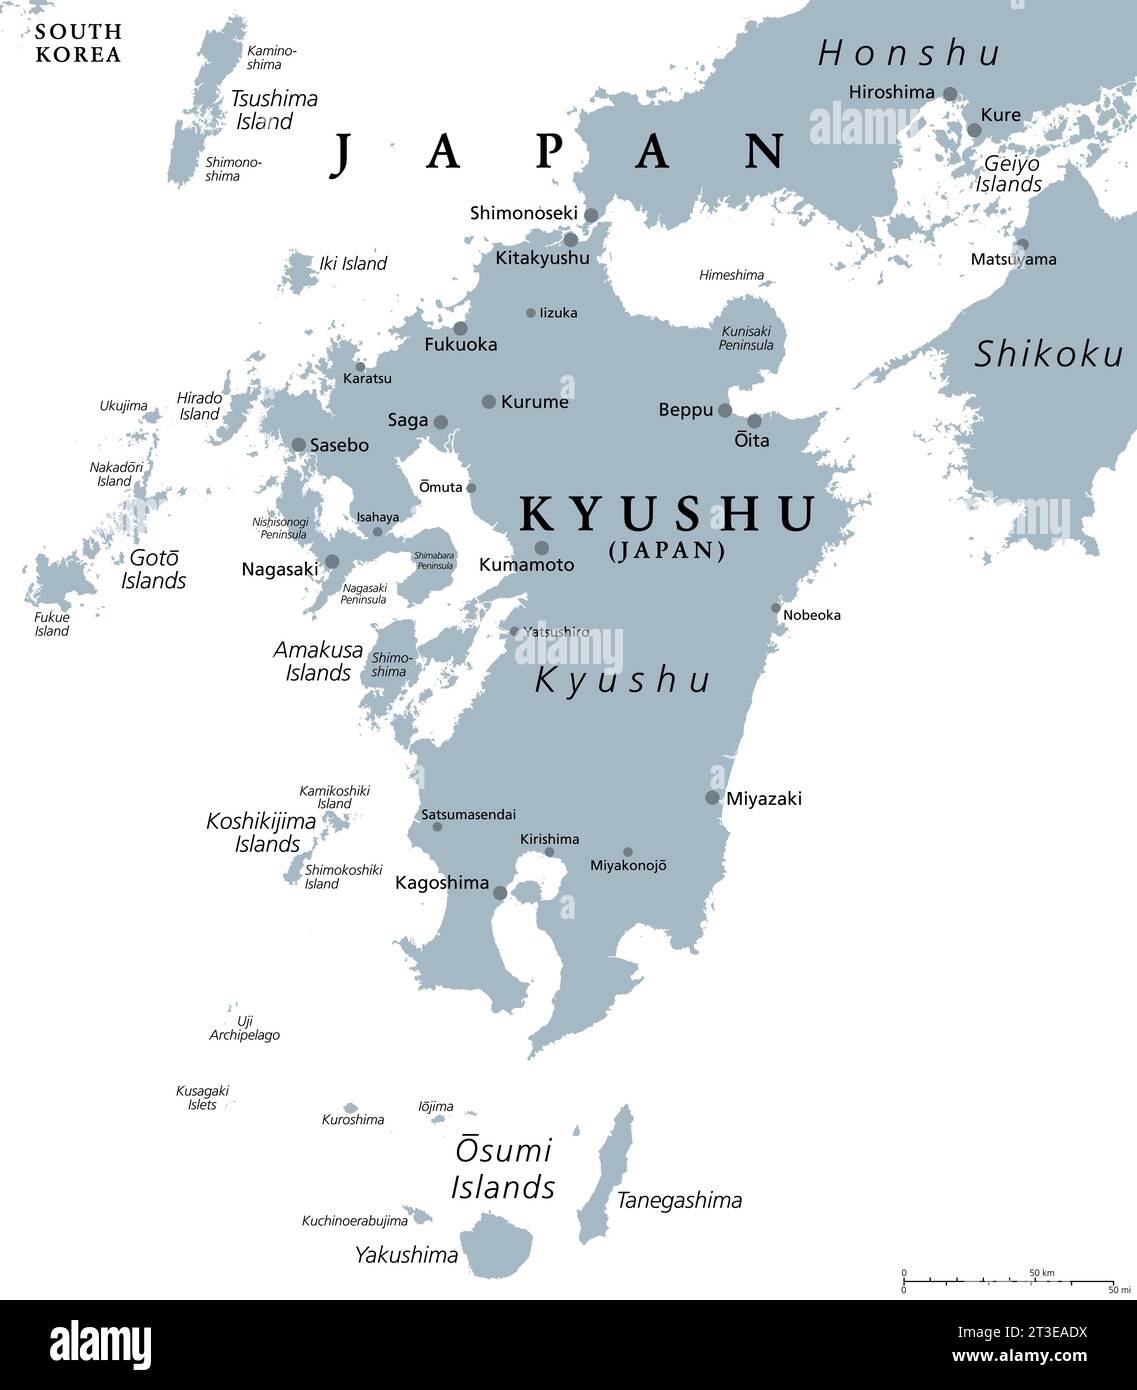 Kyushu, graue politische Karte. Eine der fünf Hauptinseln Japans, südwestlich von Honshu und Shikoku, getrennt durch das Seto-Binnenmeer. Stockfoto